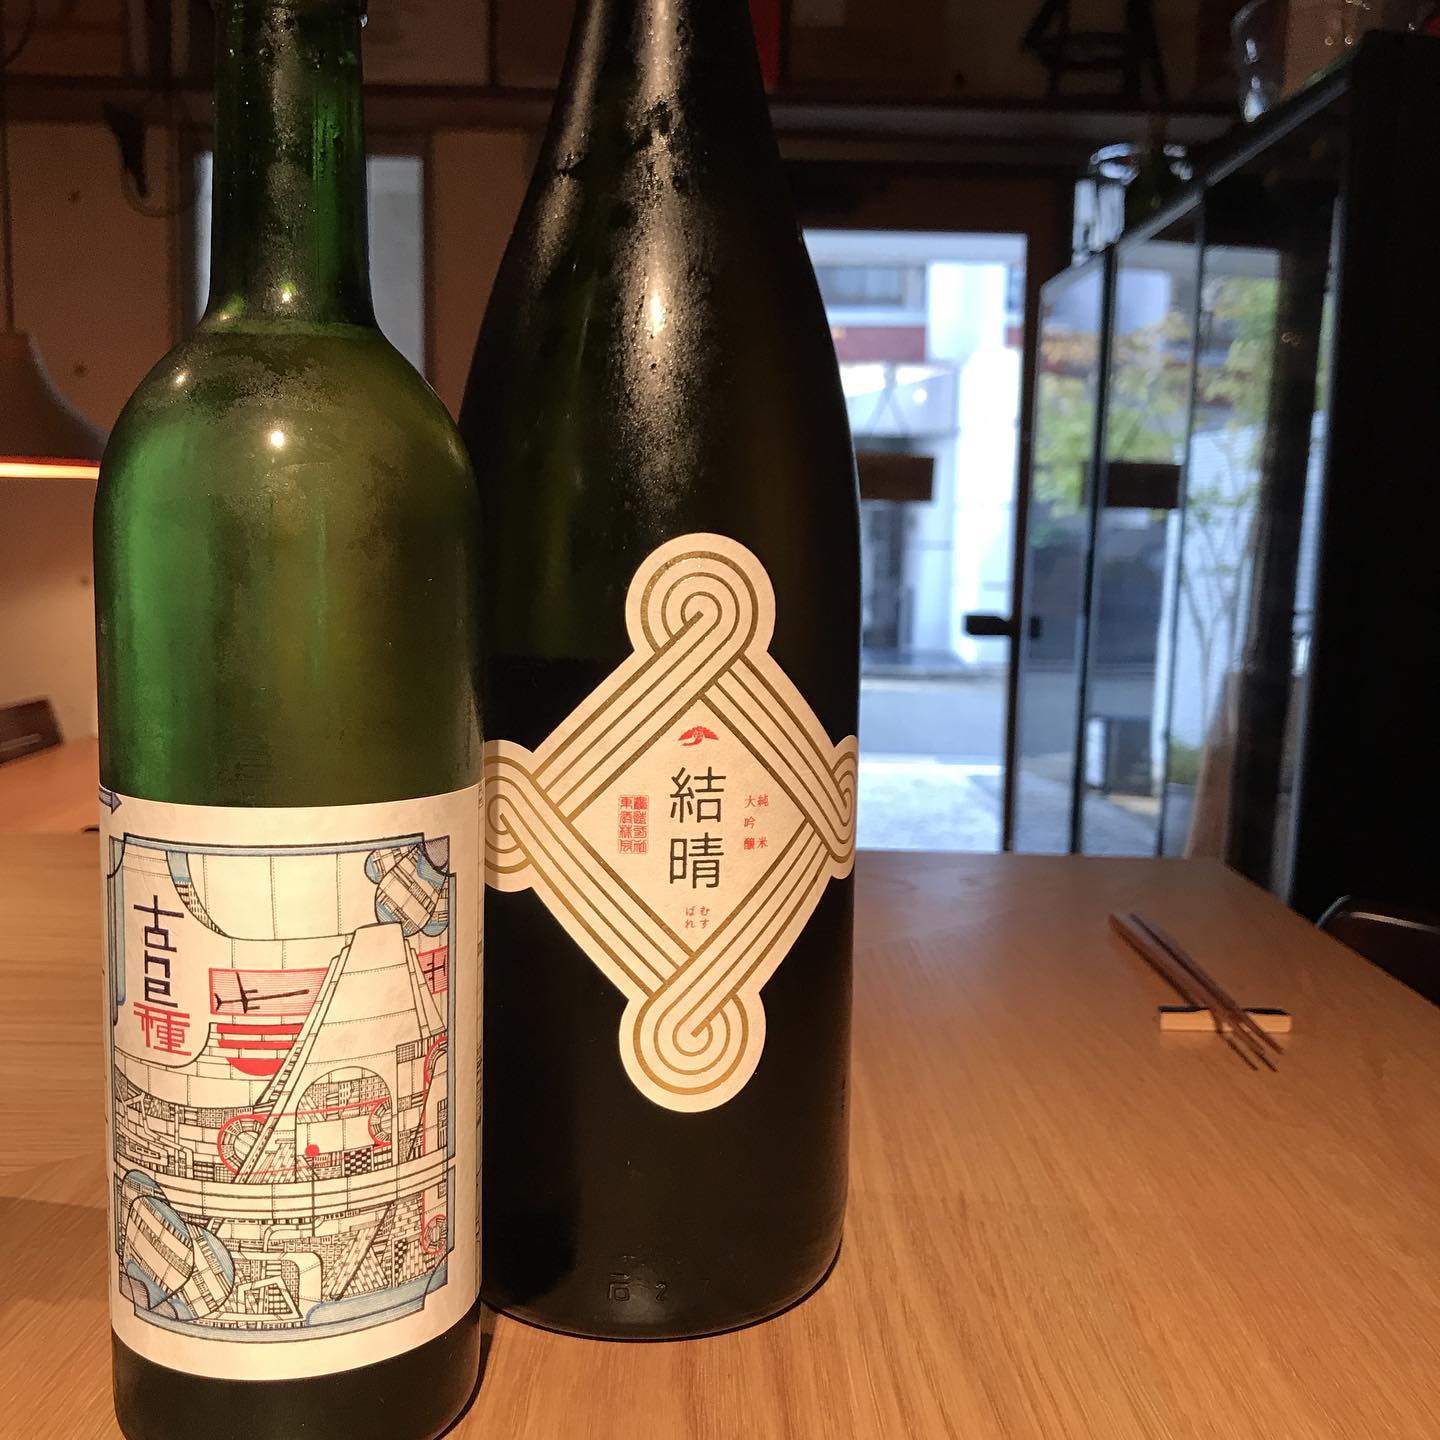 今日10/2はグラスのラインナップに東鶴@佐賀の「結晴(むすばれ)純米大吟醸」と98wines@山梨「TANE 霜(SOU)」を追加してます。ただいまグラスは、泡1種、白4種、赤4種、オレンジ1種、日本酒8種開けてます。#イルフェソワフ #ワイン#日本酒 #薬院#警固